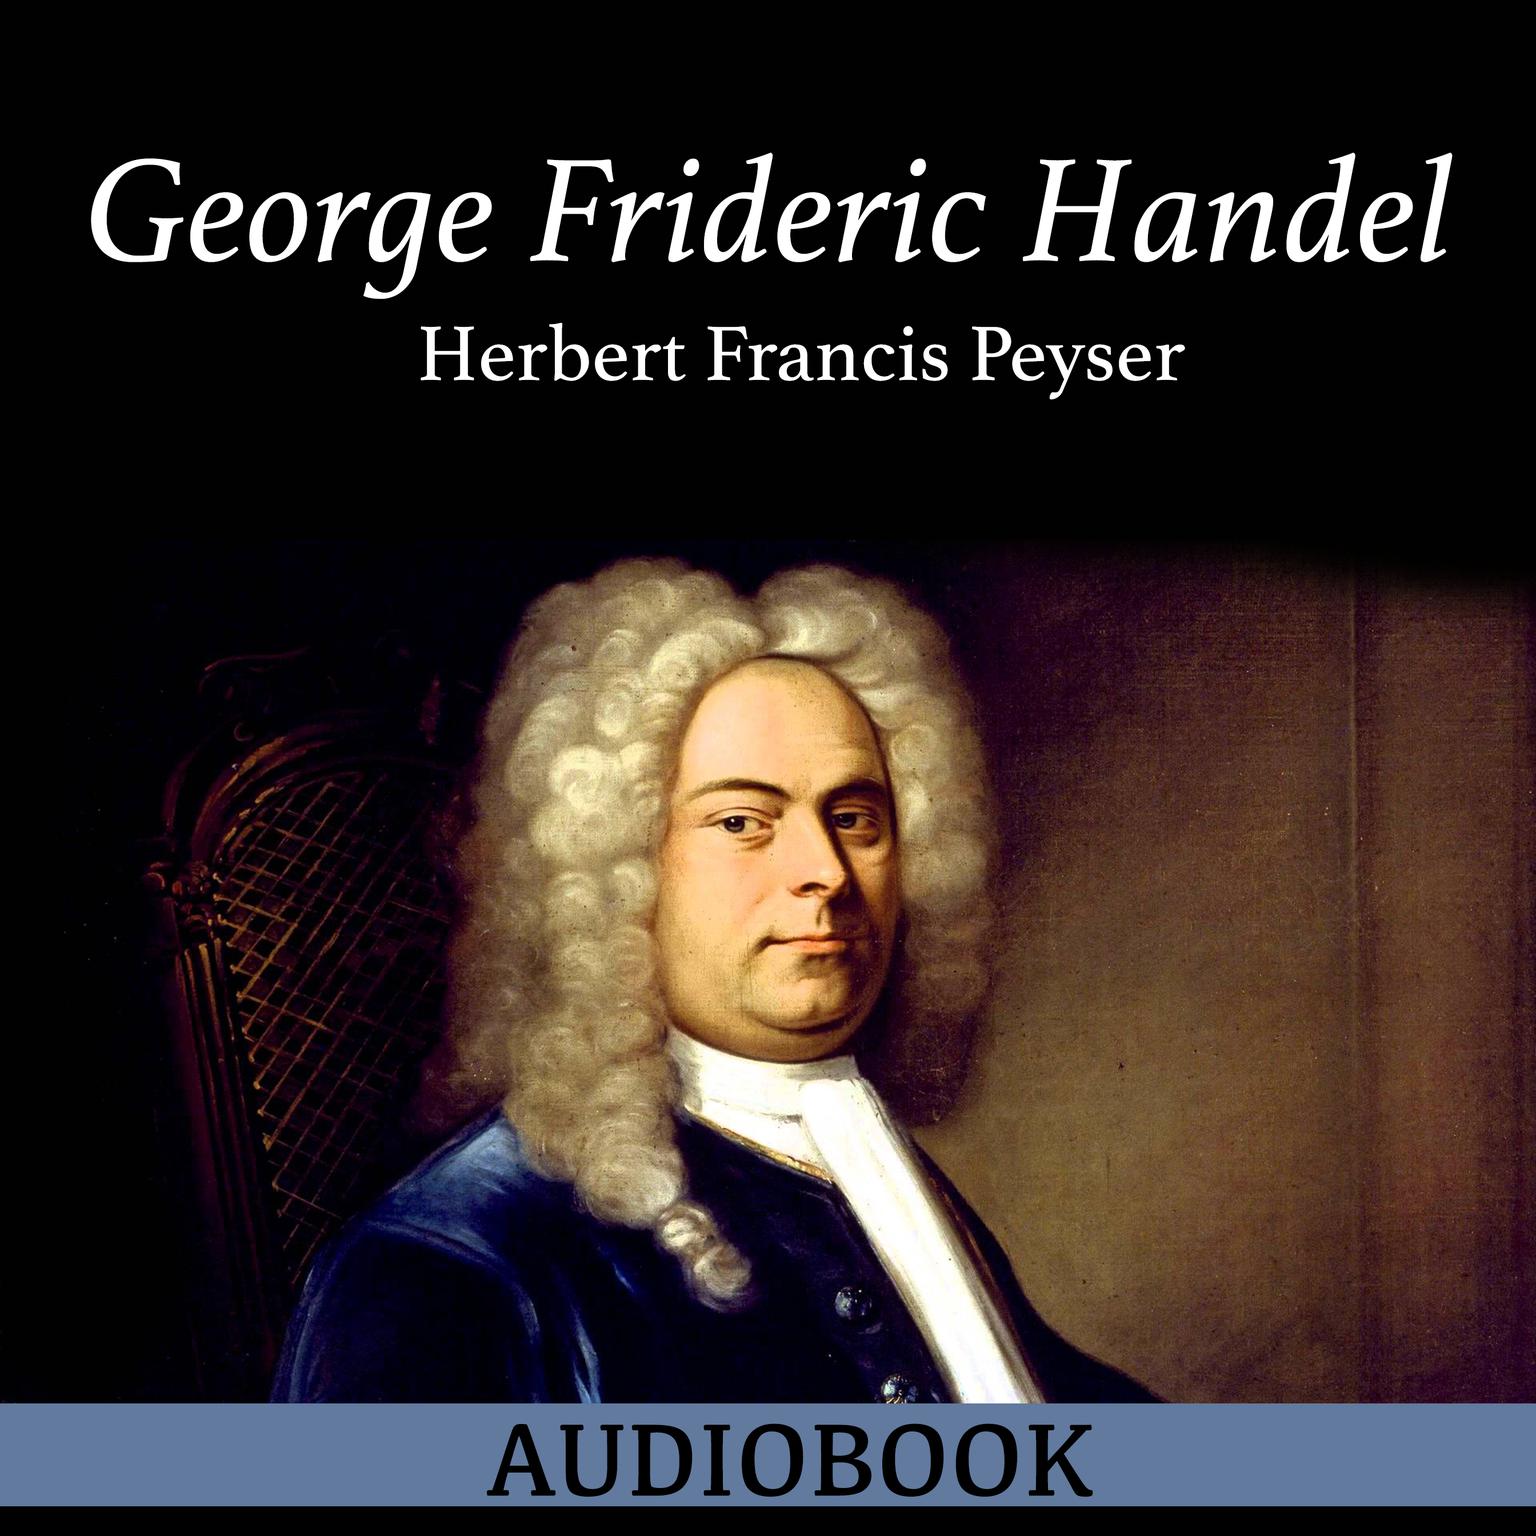 George Frideric Handel Audiobook, by Herbert Francis Peyser